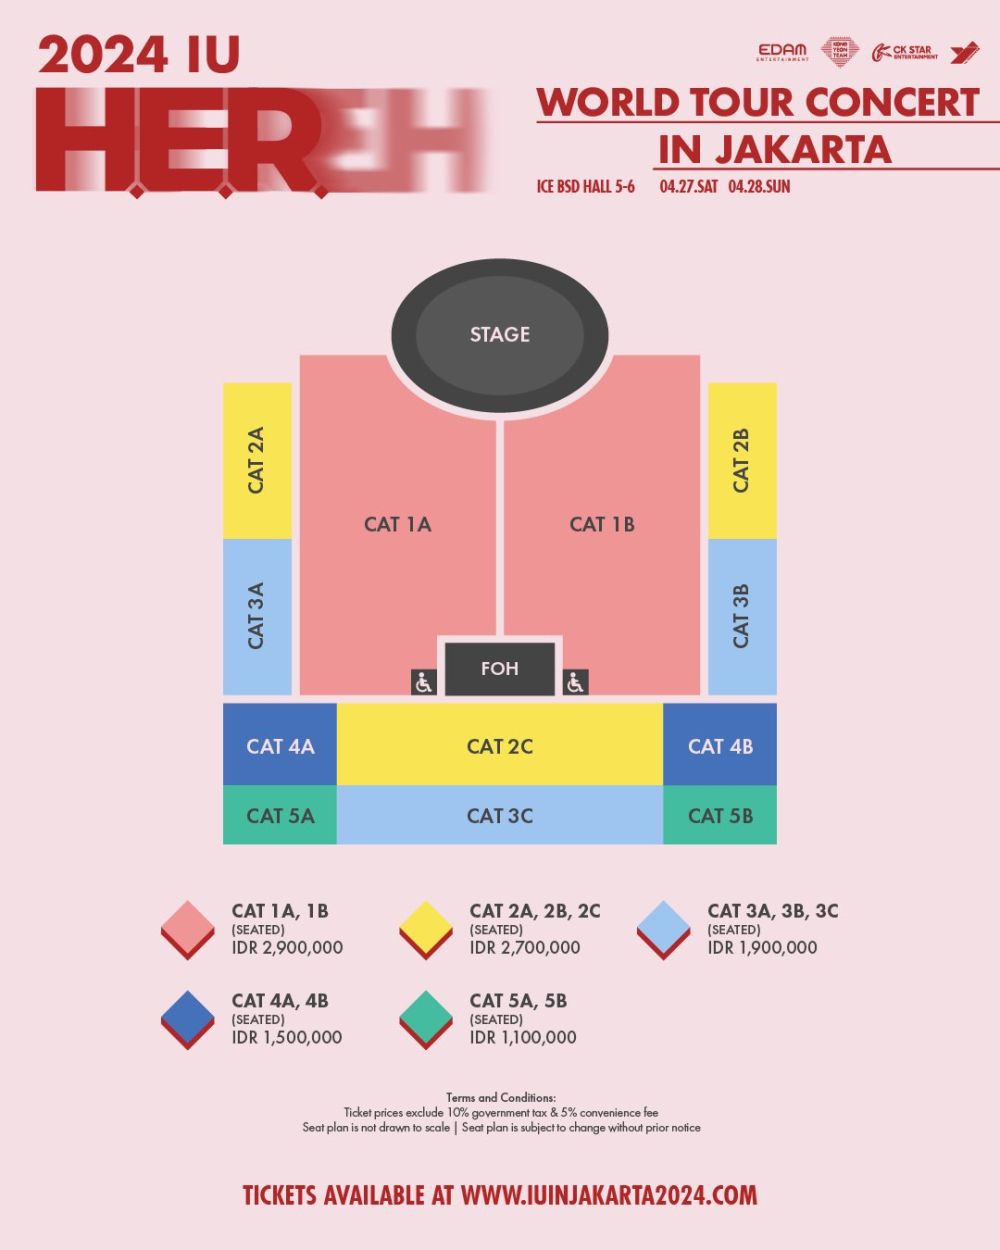 Harga Tiket Konser IU di Jakarta dan Cara Membelinya